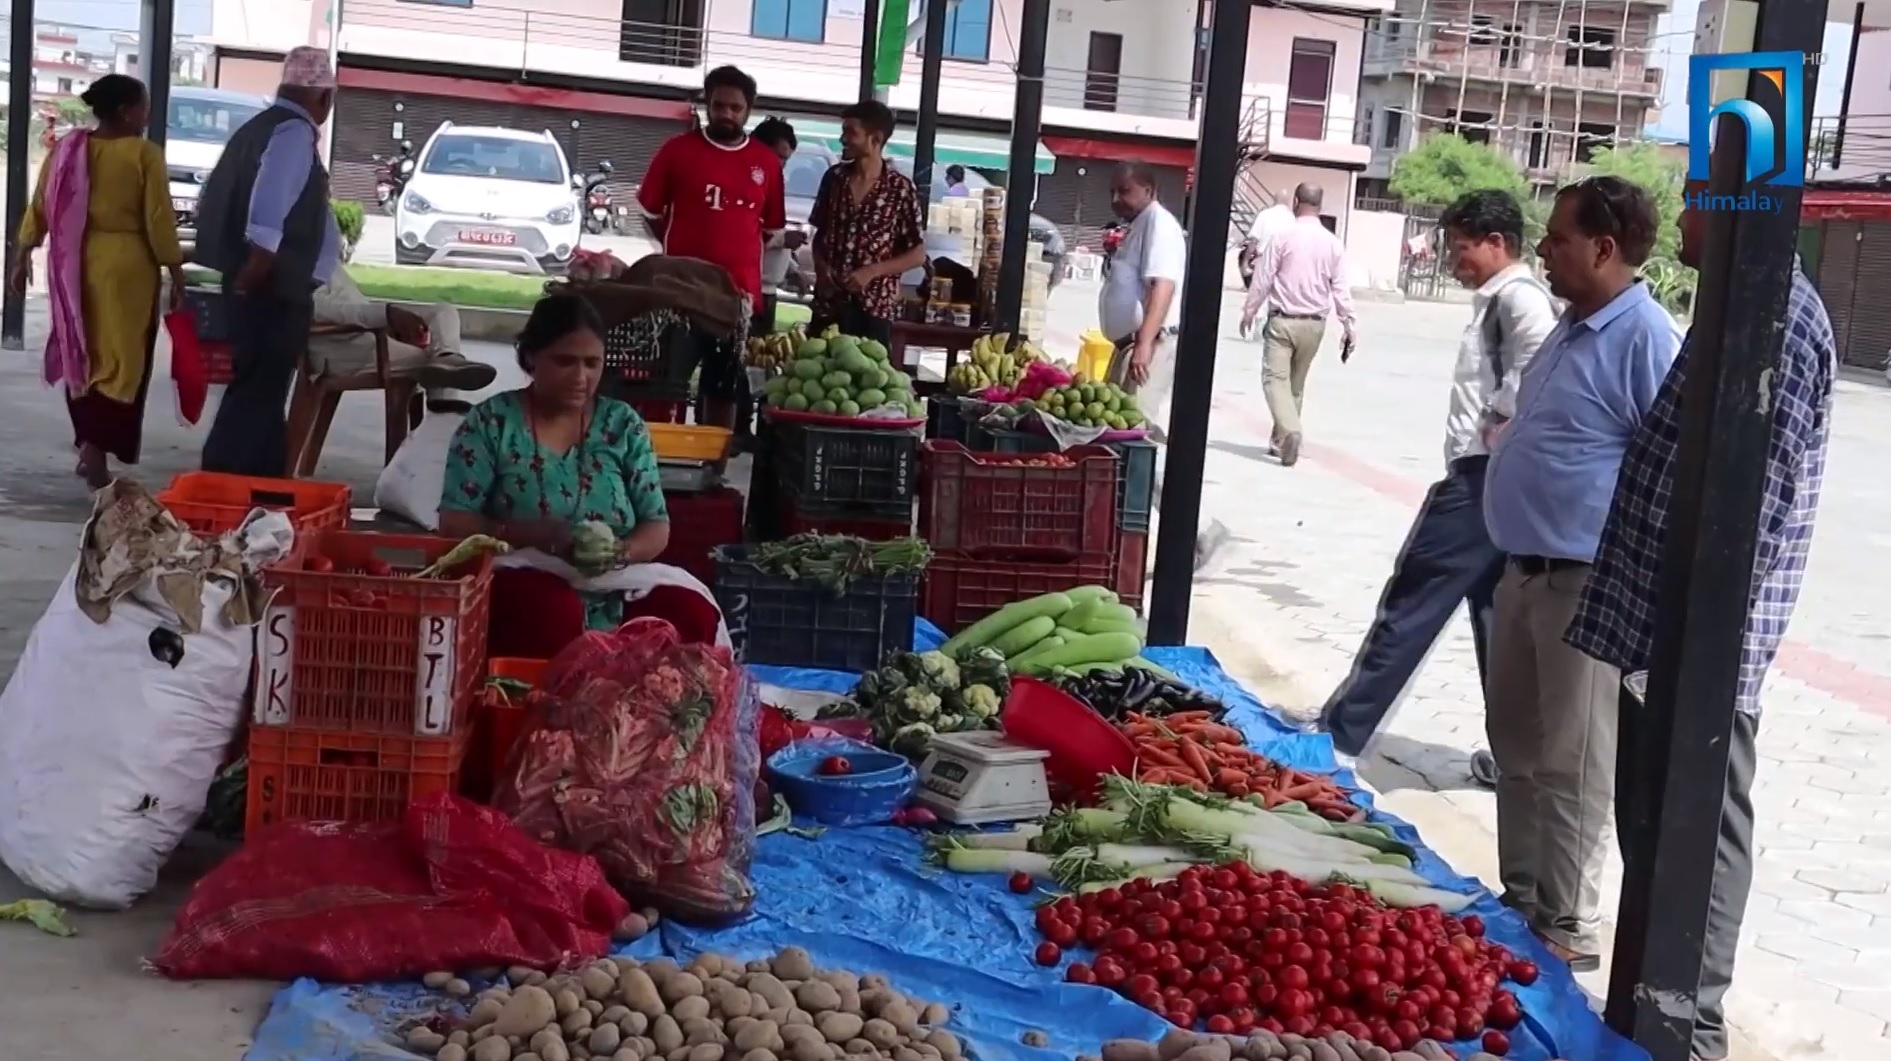 तिलोत्तमामा कृषि थोक बजार, ४२ जिल्लाका किसान प्रत्यक्ष जोडिए (भिडियो रिपोर्टसहित)